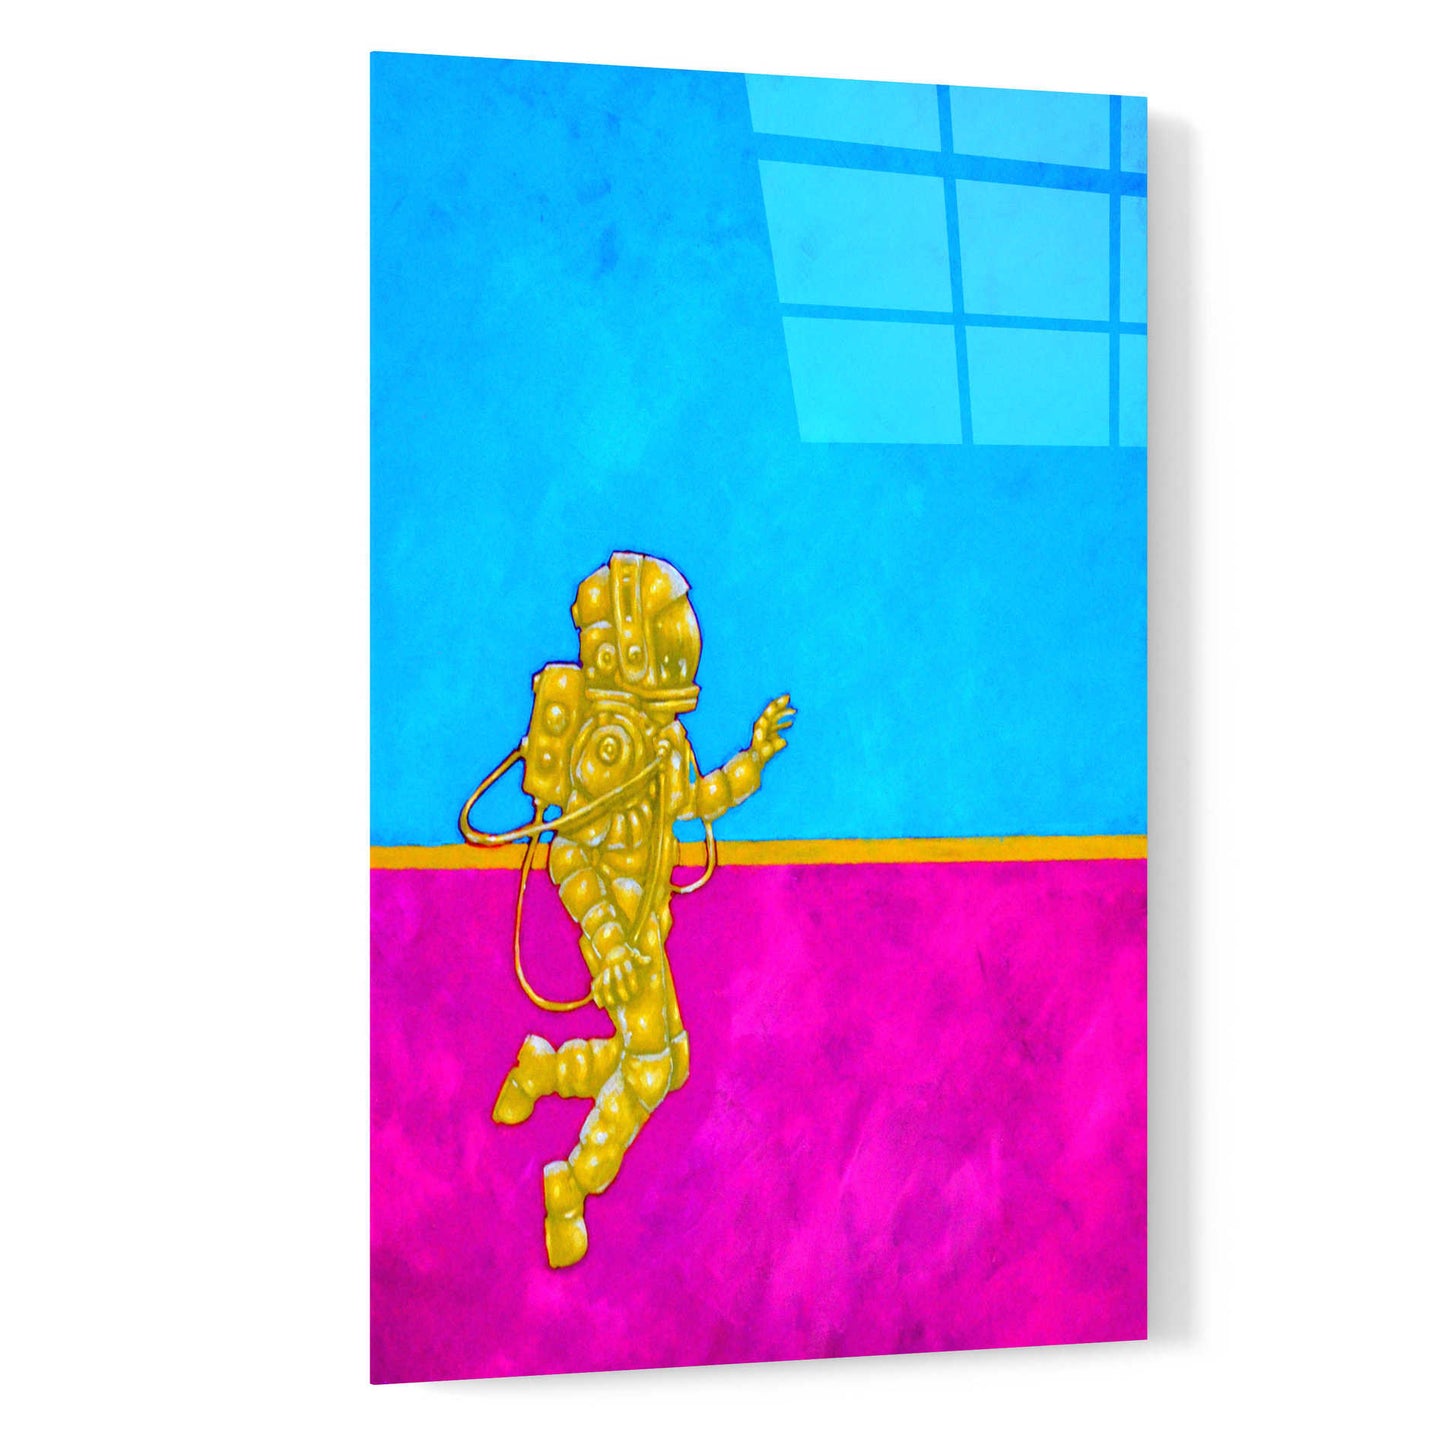 Epic Art 'Hallo Spaceboy II' by Craig Snodgrass, Acrylic Glass Wall Art,16x24